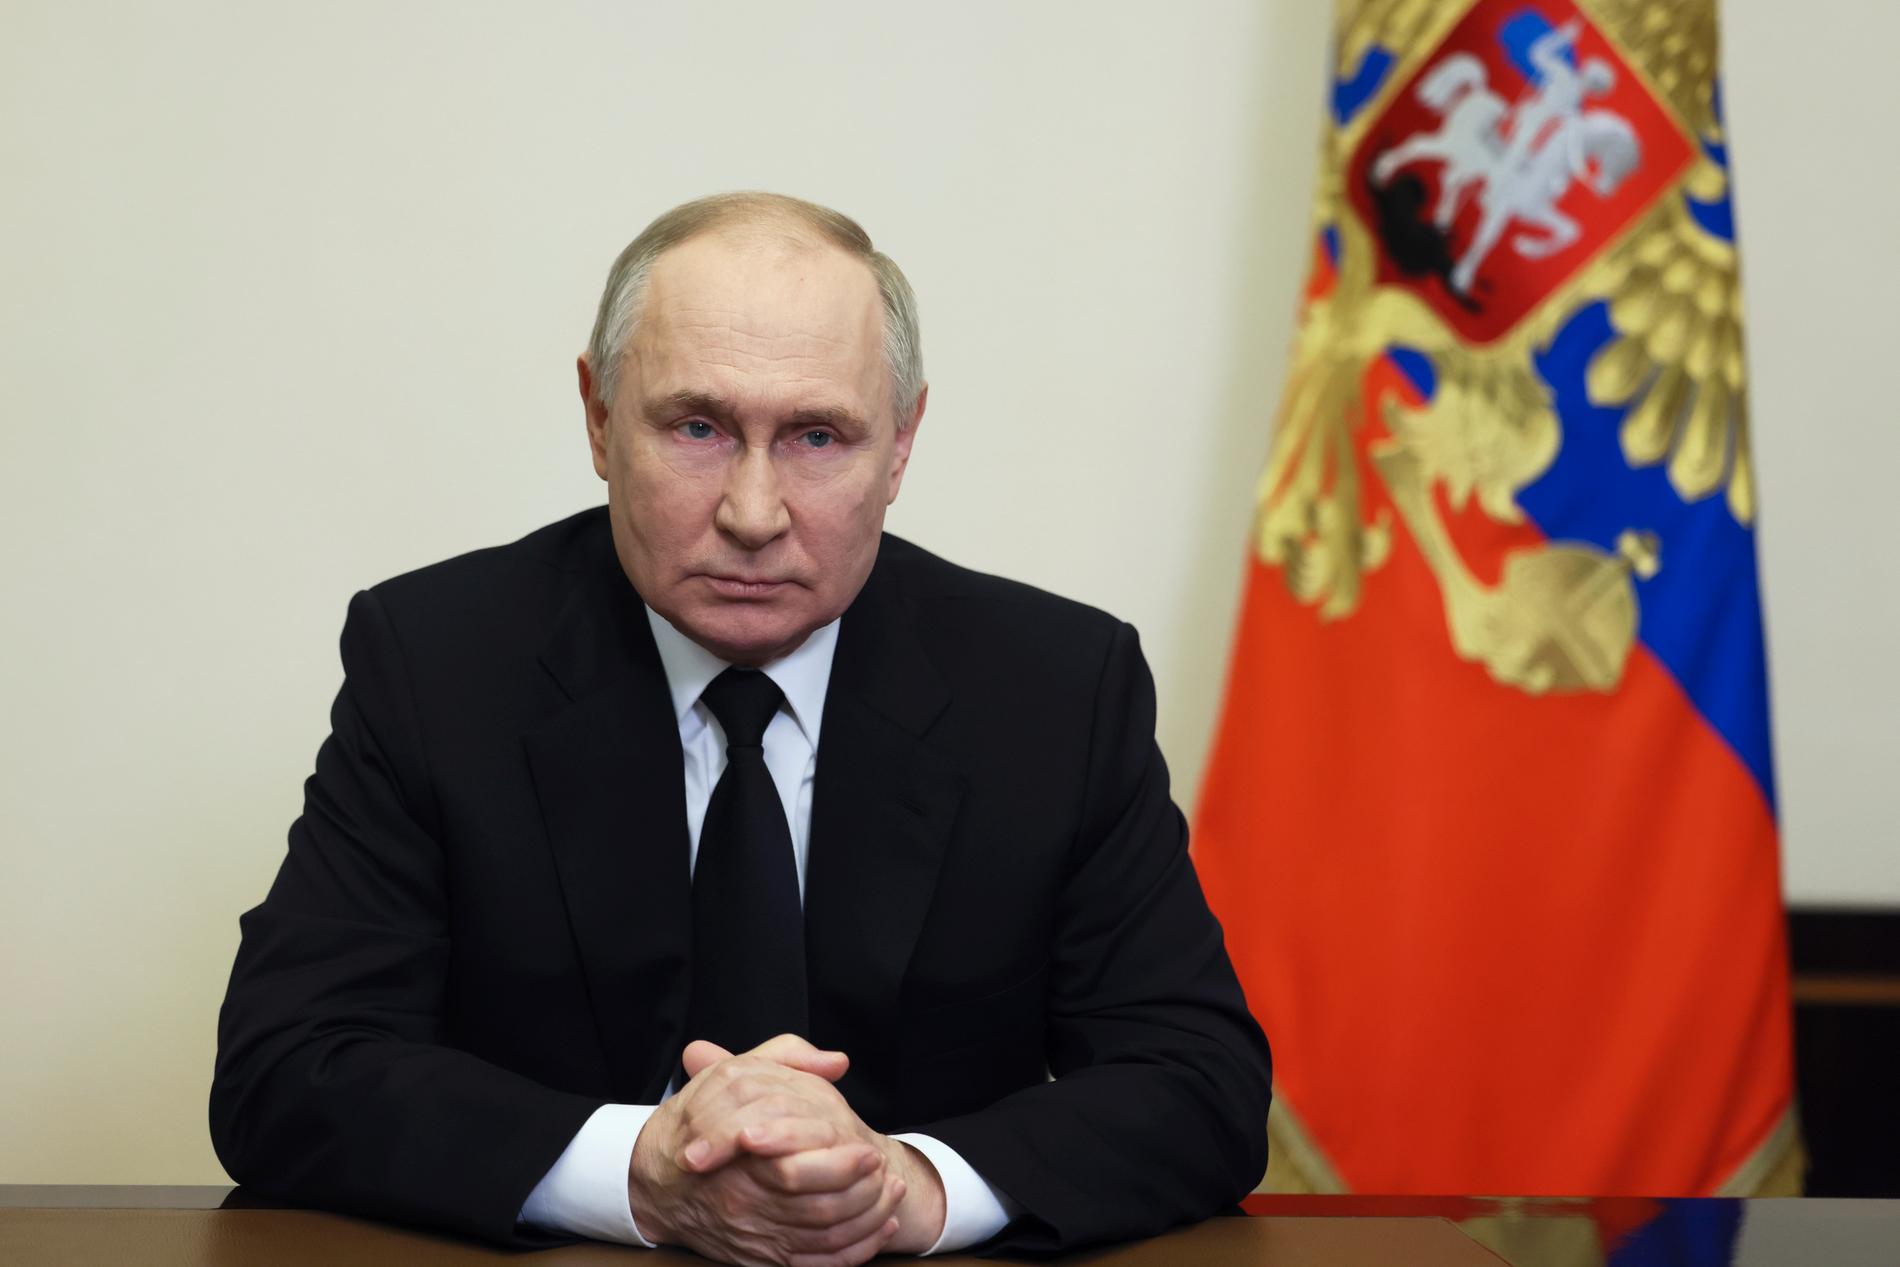 Rysslands president Vladimir Putin under det tv-sända talet på lördagen.